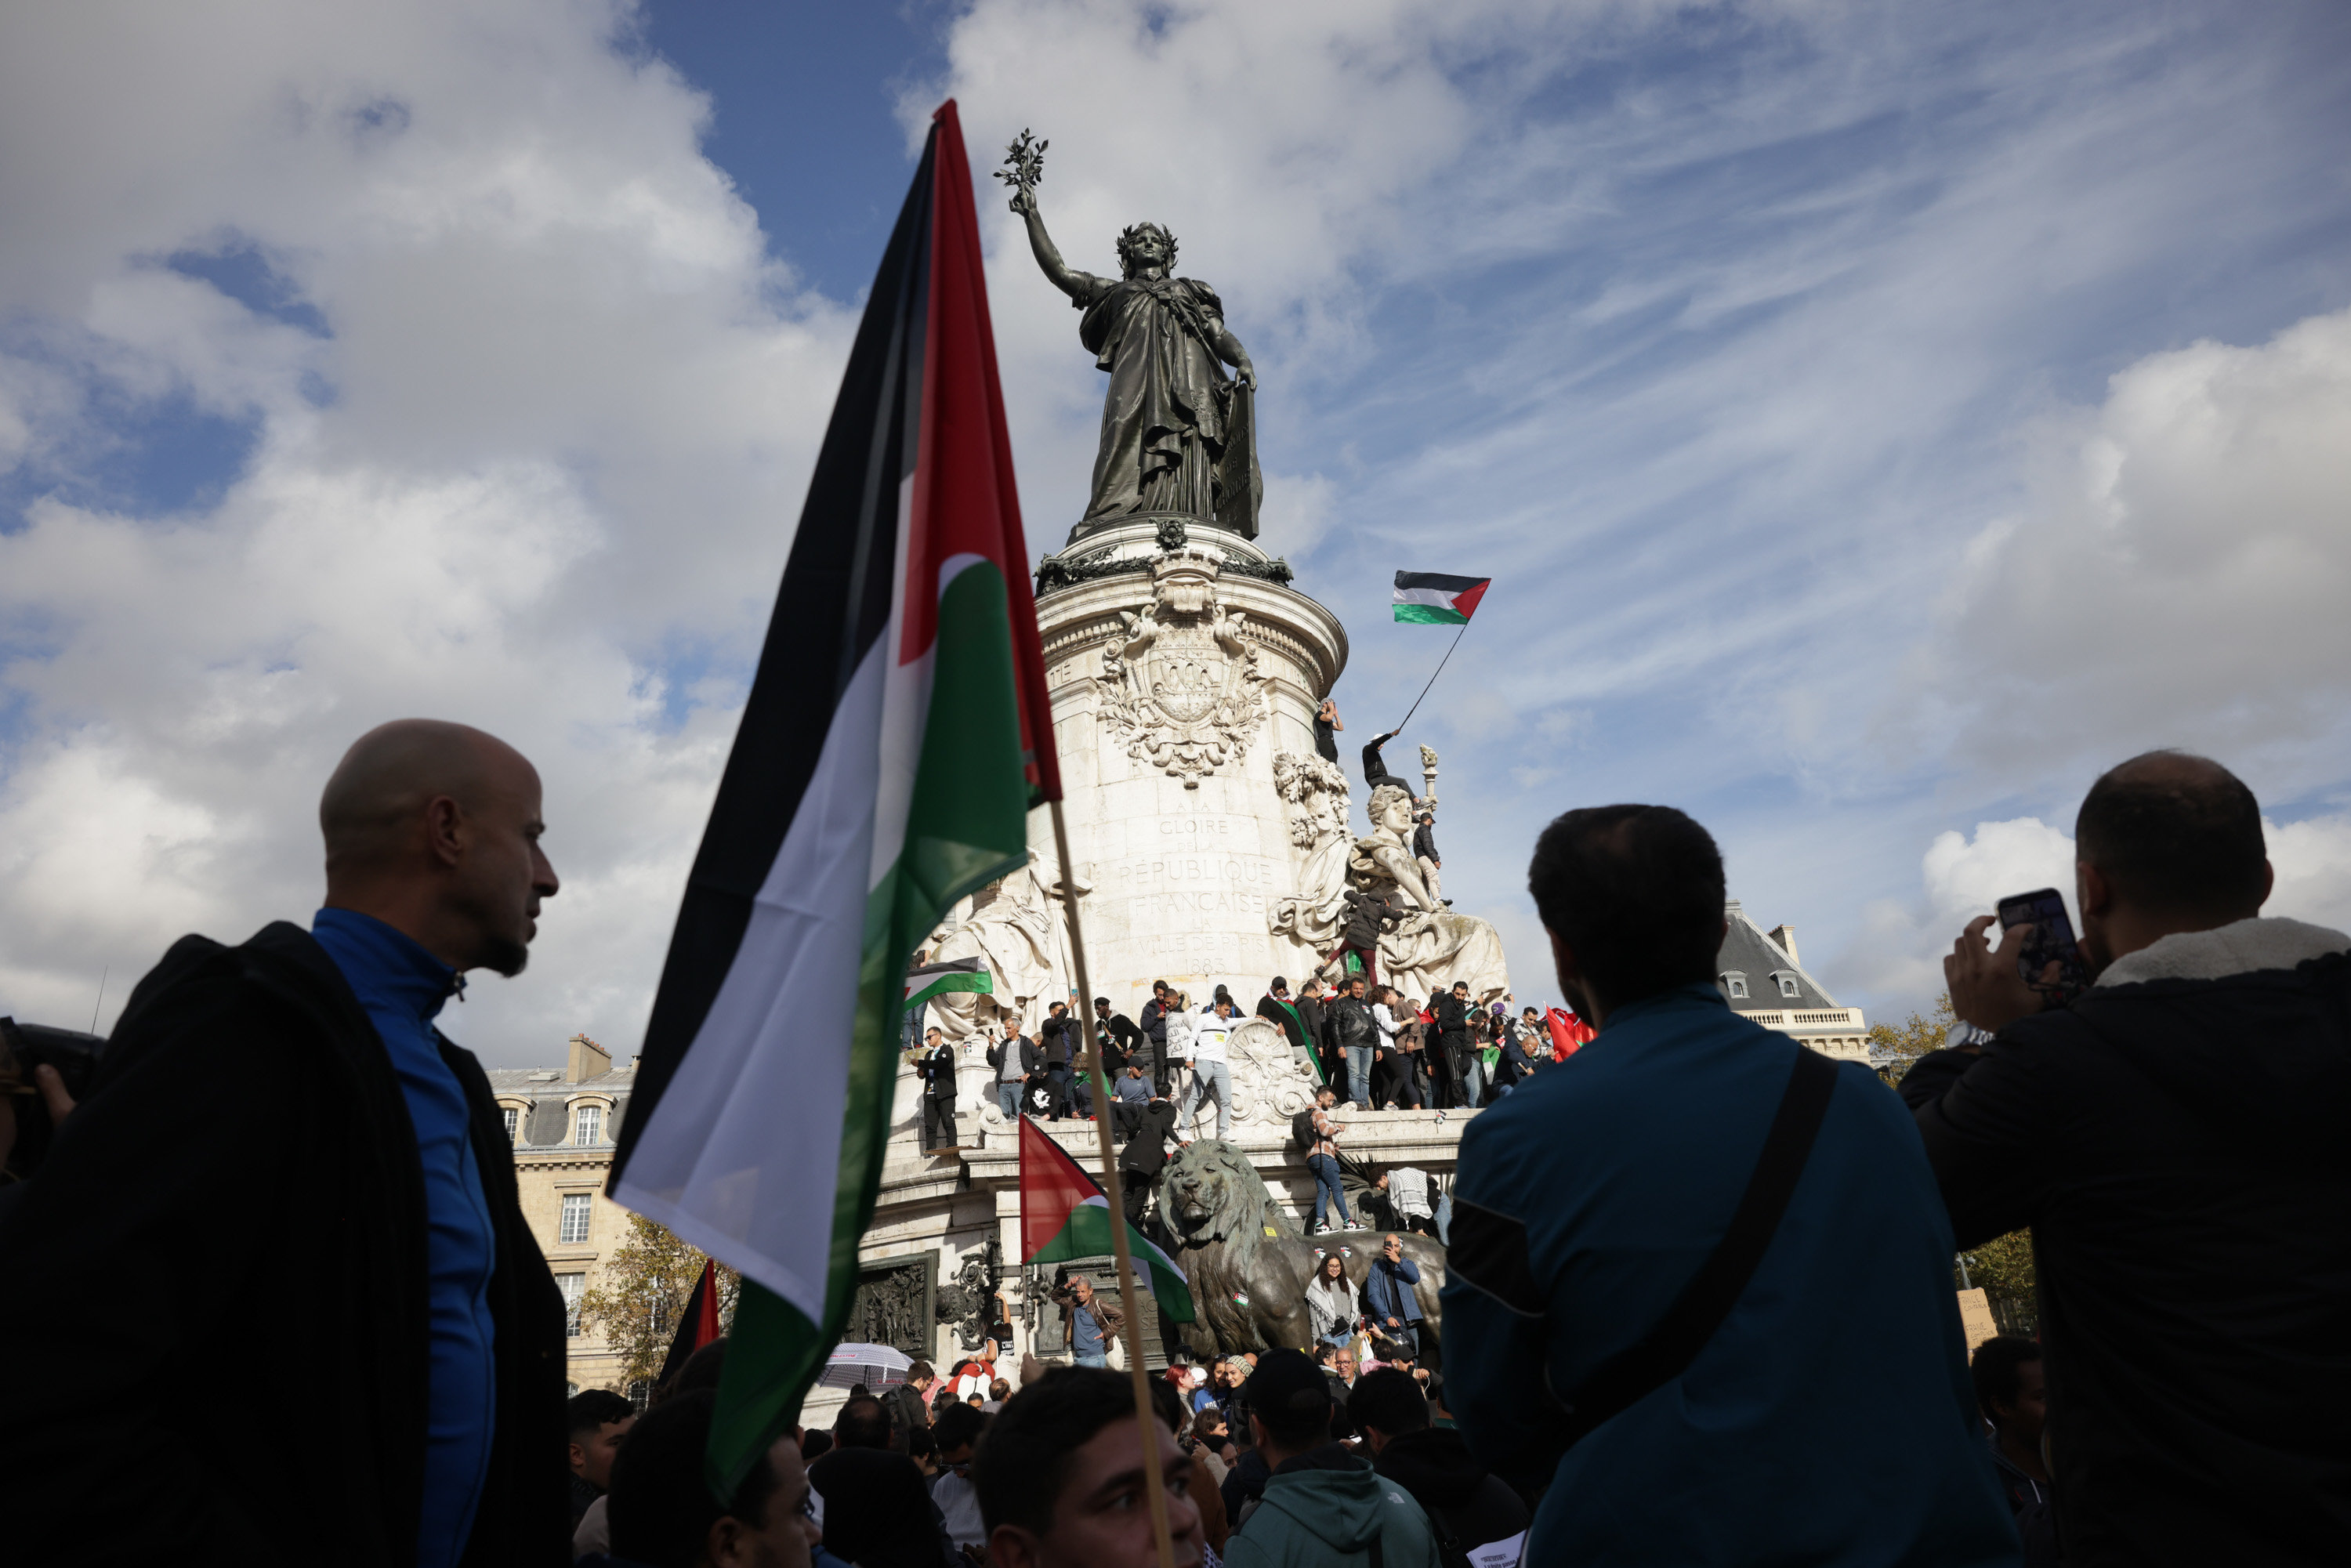 Une manifestation de soutien aux Palestiniens s'était déroulée place de la République, à Paris, le 22 octobre. LP / Philippe de Poulpiquet